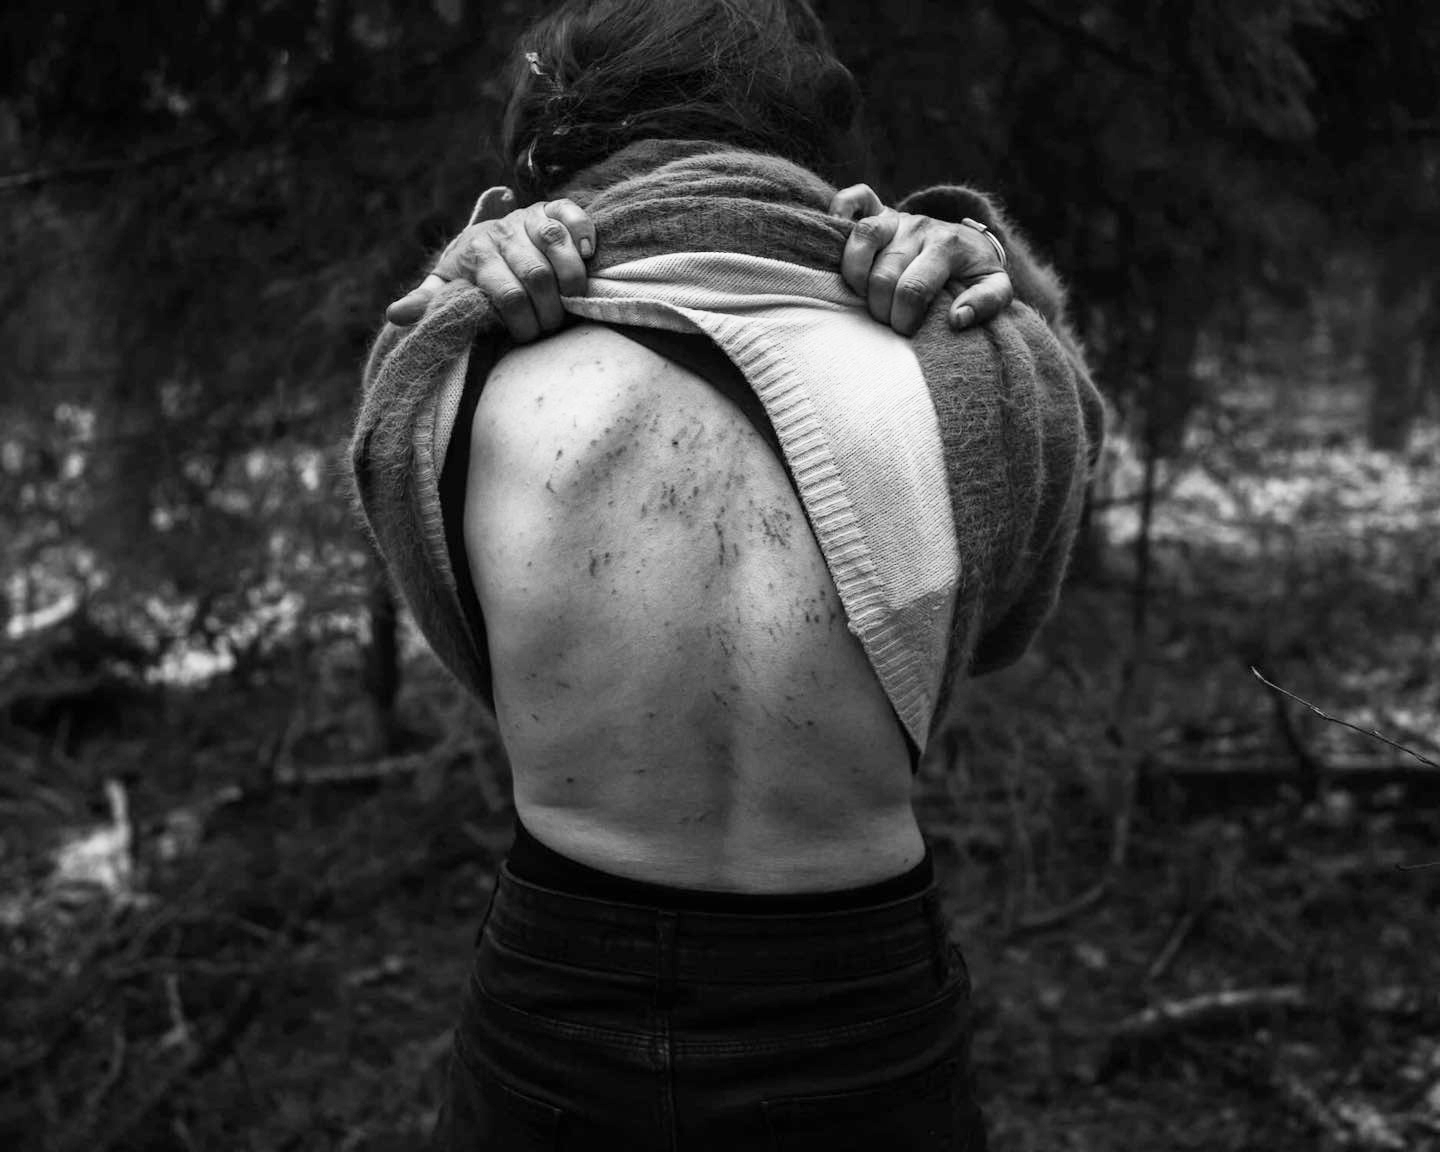 Так виглядає спина іракської жінки Асмін, яку побили співробітники білоруських спецслужб. Фото Кароль Григорук.